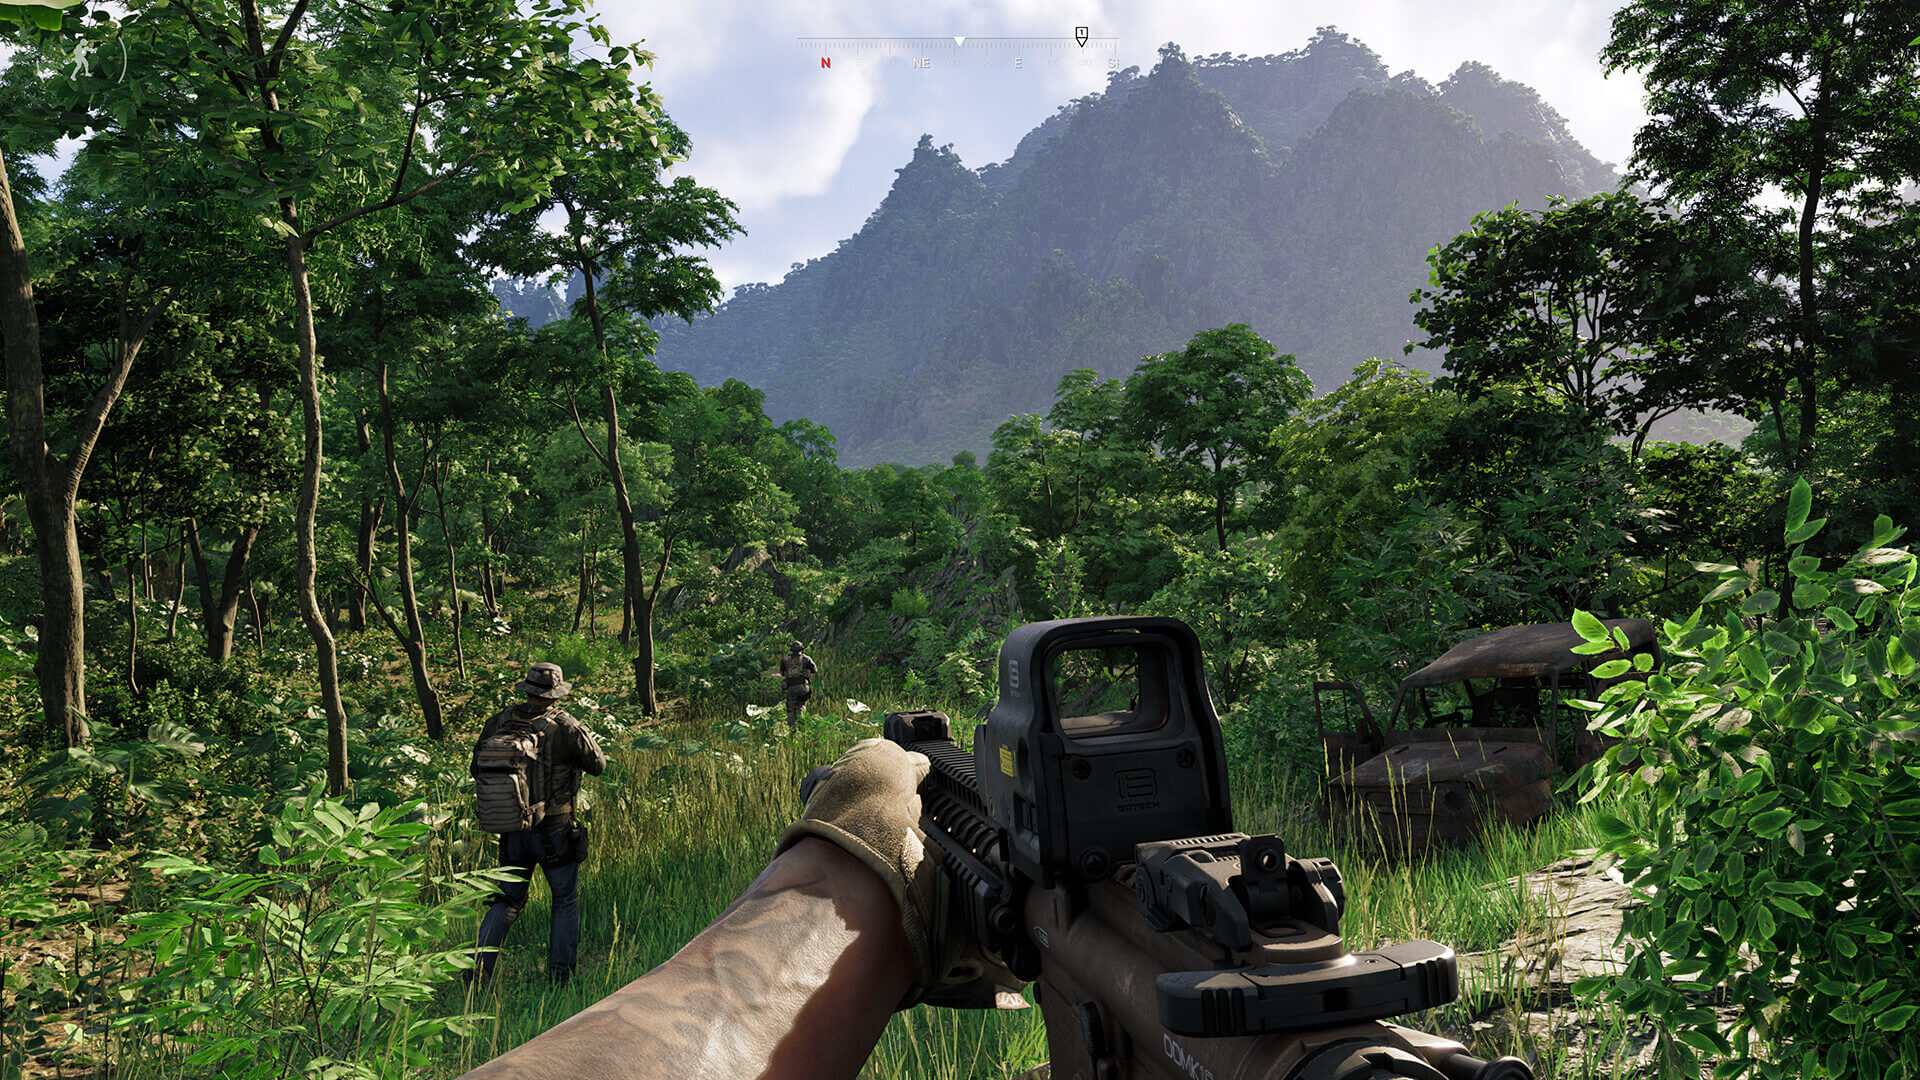 Тактический шутер от первого лица с открытым миром на базе Unreal Engine 5, Grey Zone Warfare, за первый месяц было продано 900 тысяч единиц.